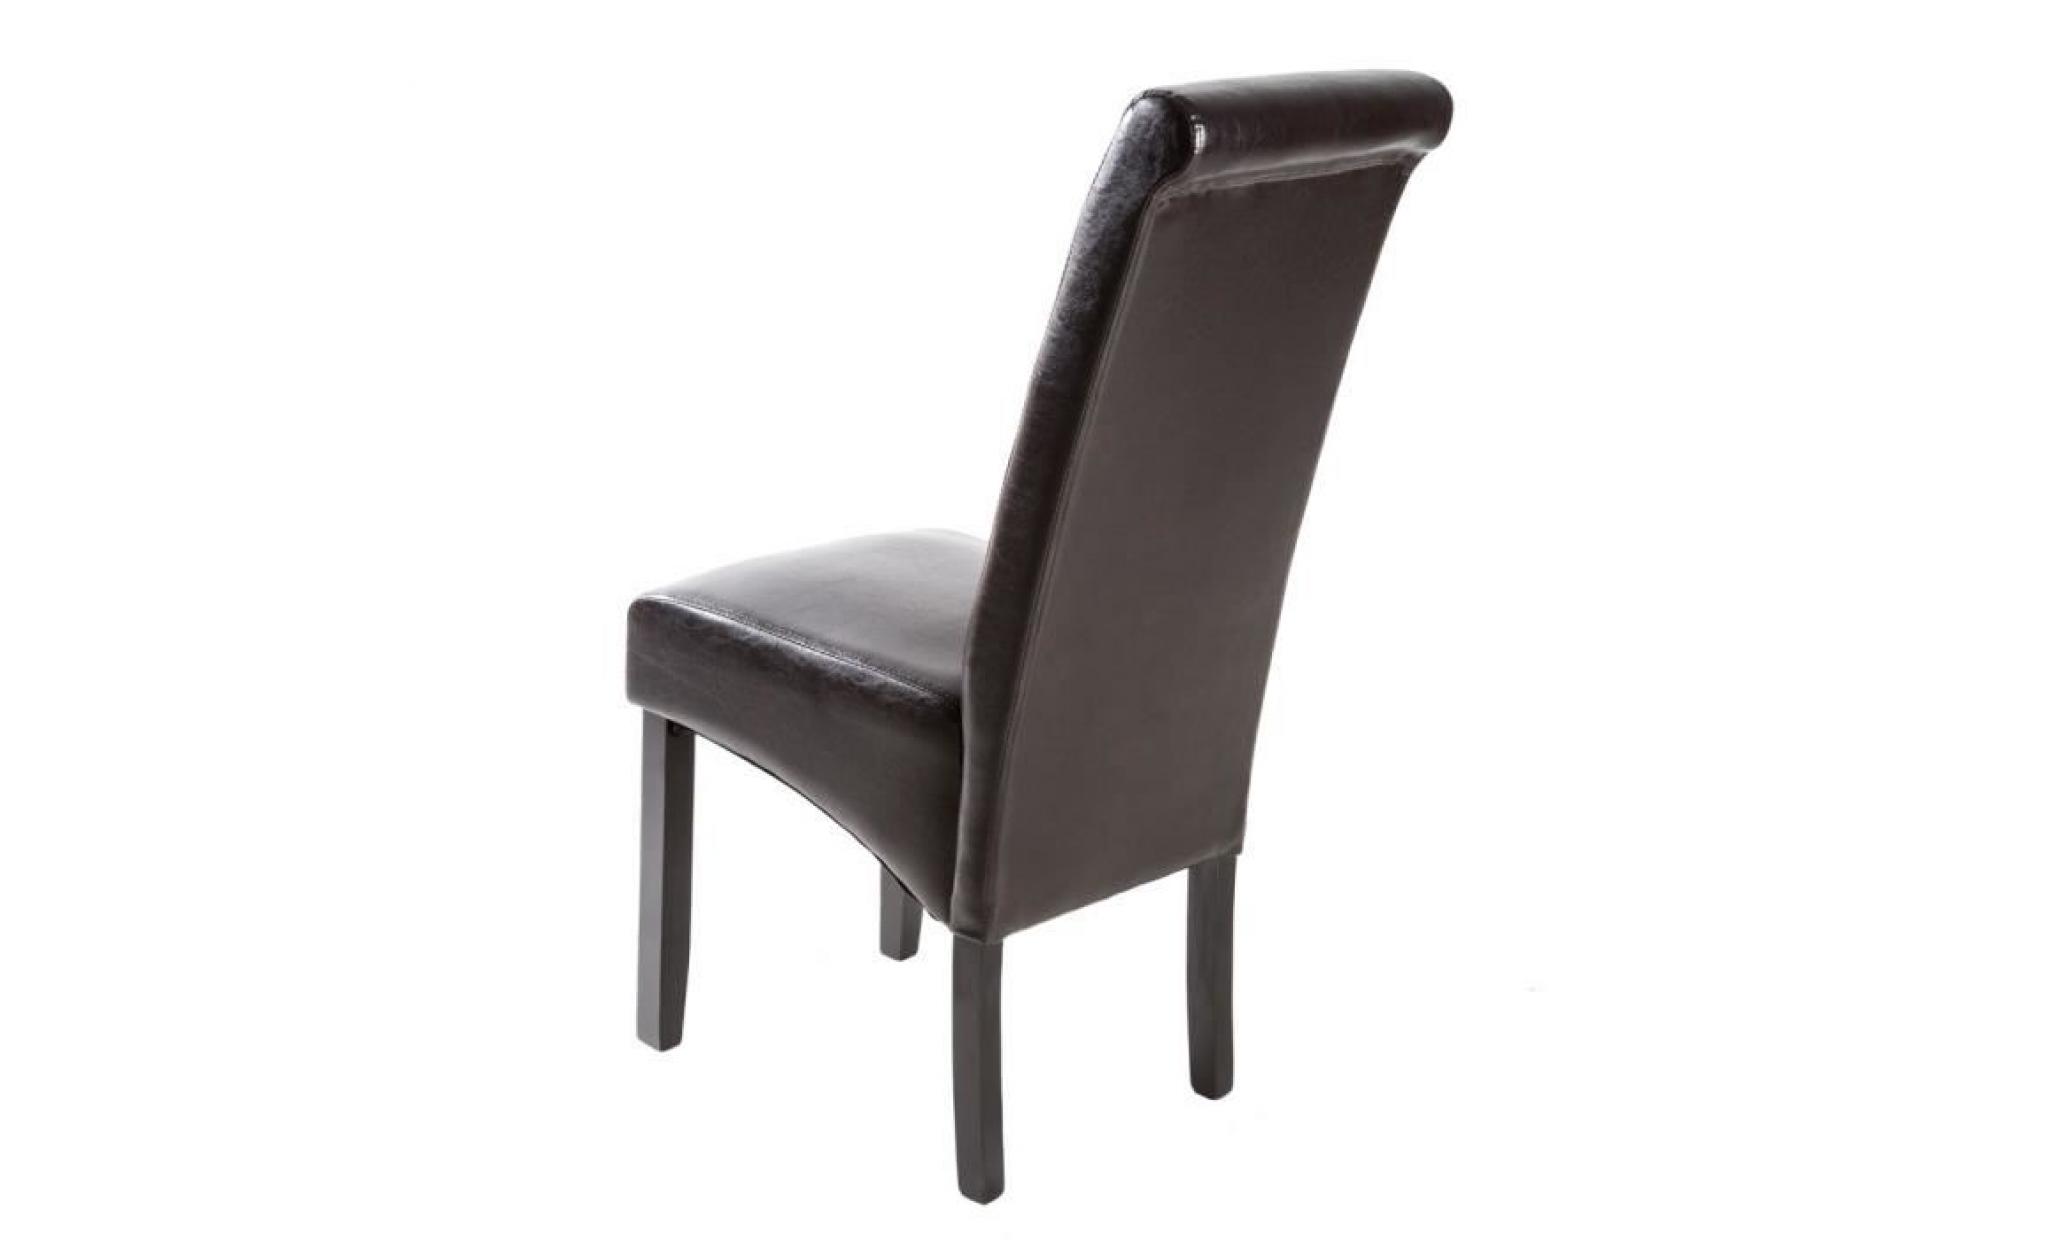 Chaise de salle à manger design 105 cm Marron, Chaise de Salon, Meuble de salon, Mobilier de Salon TECTAKE pas cher